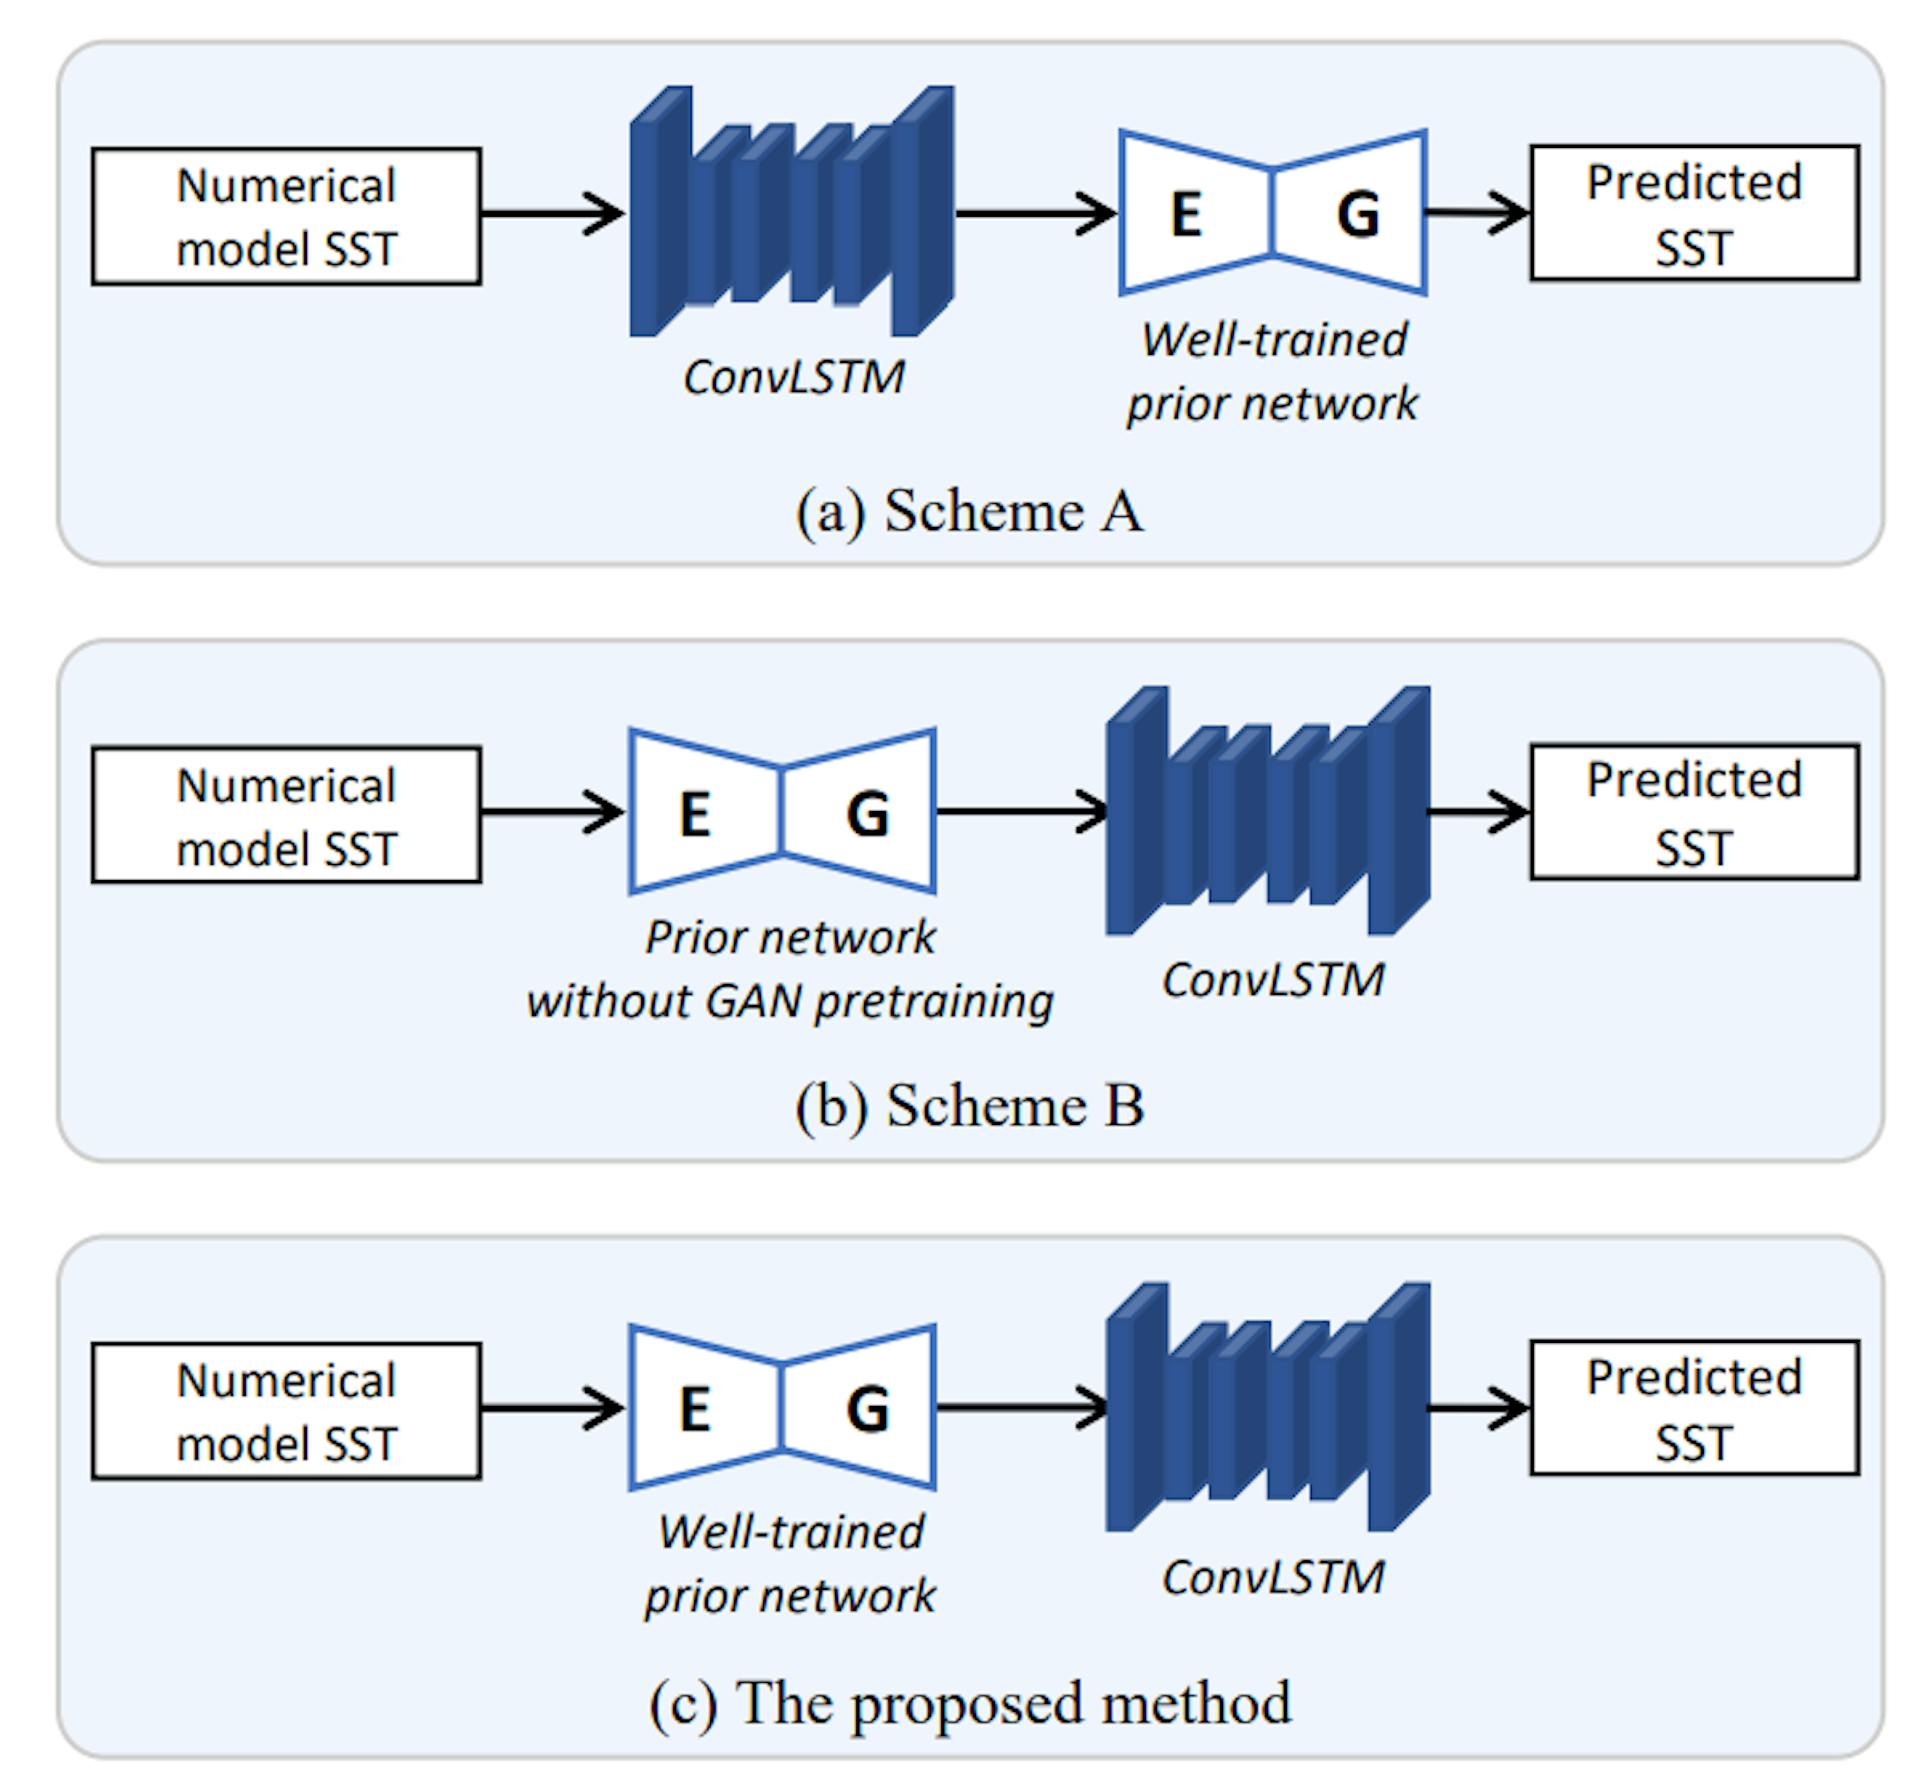 Hình 3. Minh họa ba mô hình được sử dụng trong nghiên cứu cắt bỏ. (a) Sơ đồ A: Dữ liệu SST mô hình số trước tiên được đưa vào ConvLSTM, sau đó đầu ra được đưa vào mạng trước đó được đào tạo tốt. Trình tự của mạng trước và ConvLSTM được thay thế. (b) Sơ đồ B: Mạng trước đó chưa được đào tạo bài bản. Cụ thể, việc đào tạo mô hình GAN trong mạng trước đó đã bị bỏ qua. (c) Phương pháp đề xuất.